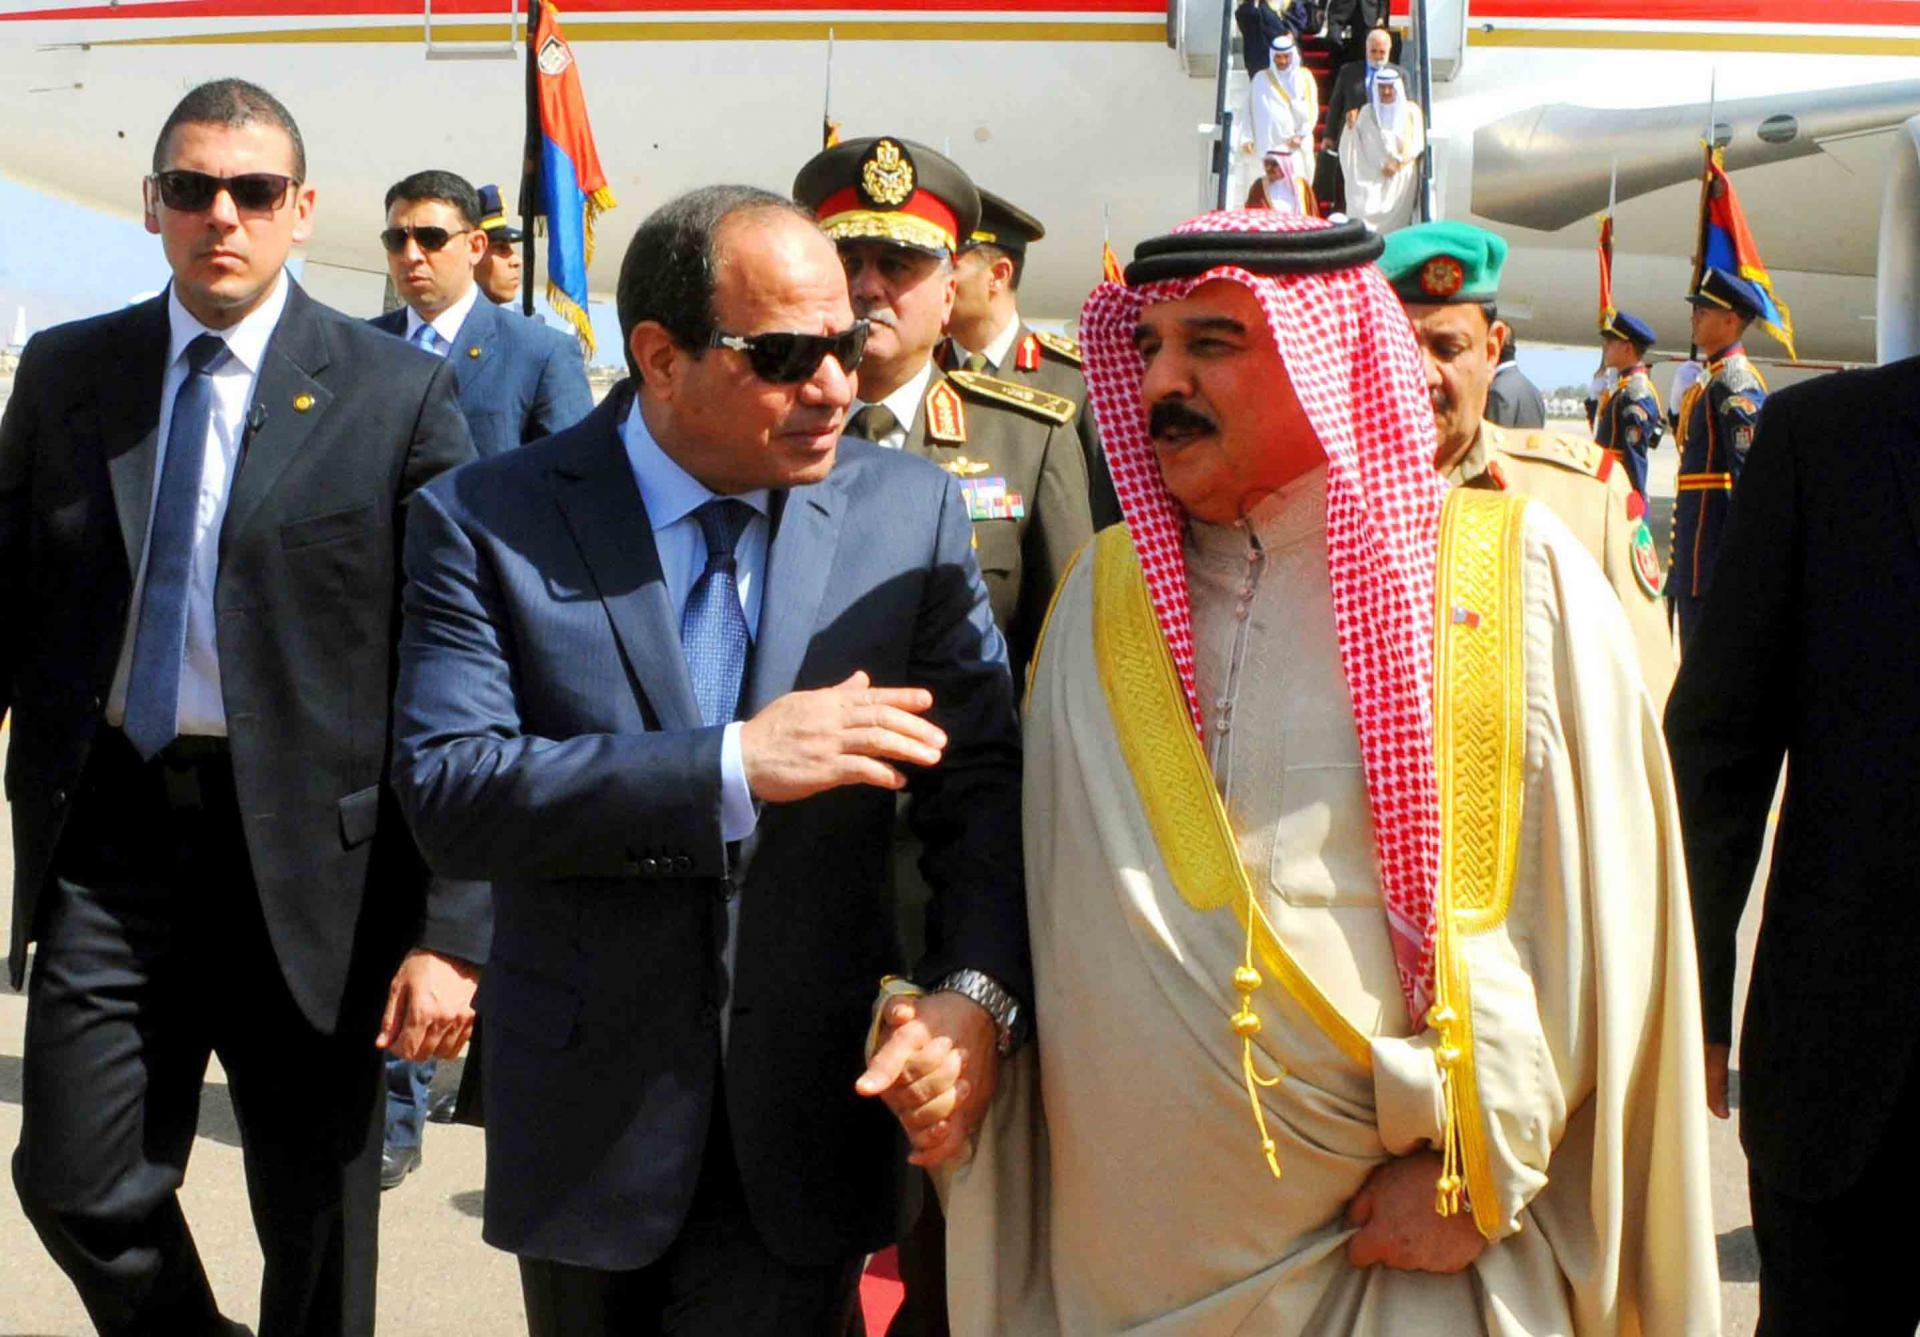 بحث الرئيس المصري عبدالفتاح السيسي وملك البحرين حمد بن عيسى آل خليفة